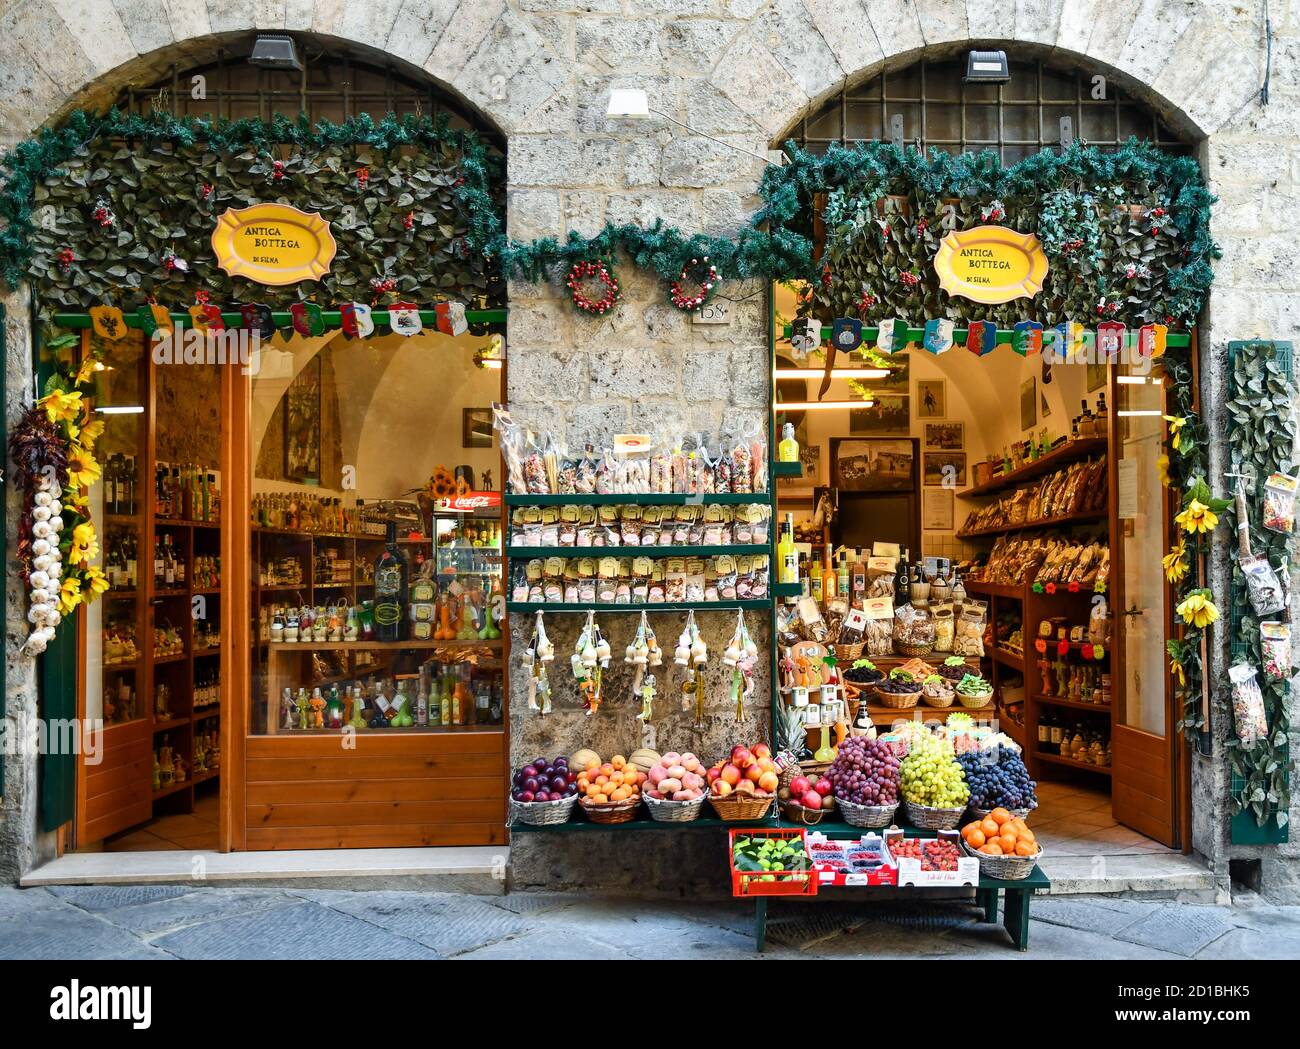 Extérieur d'une épicerie dans le centre historique avec des fruits et légumes frais exposés sur le trottoir, Sienne, Toscane, Italie Banque D'Images